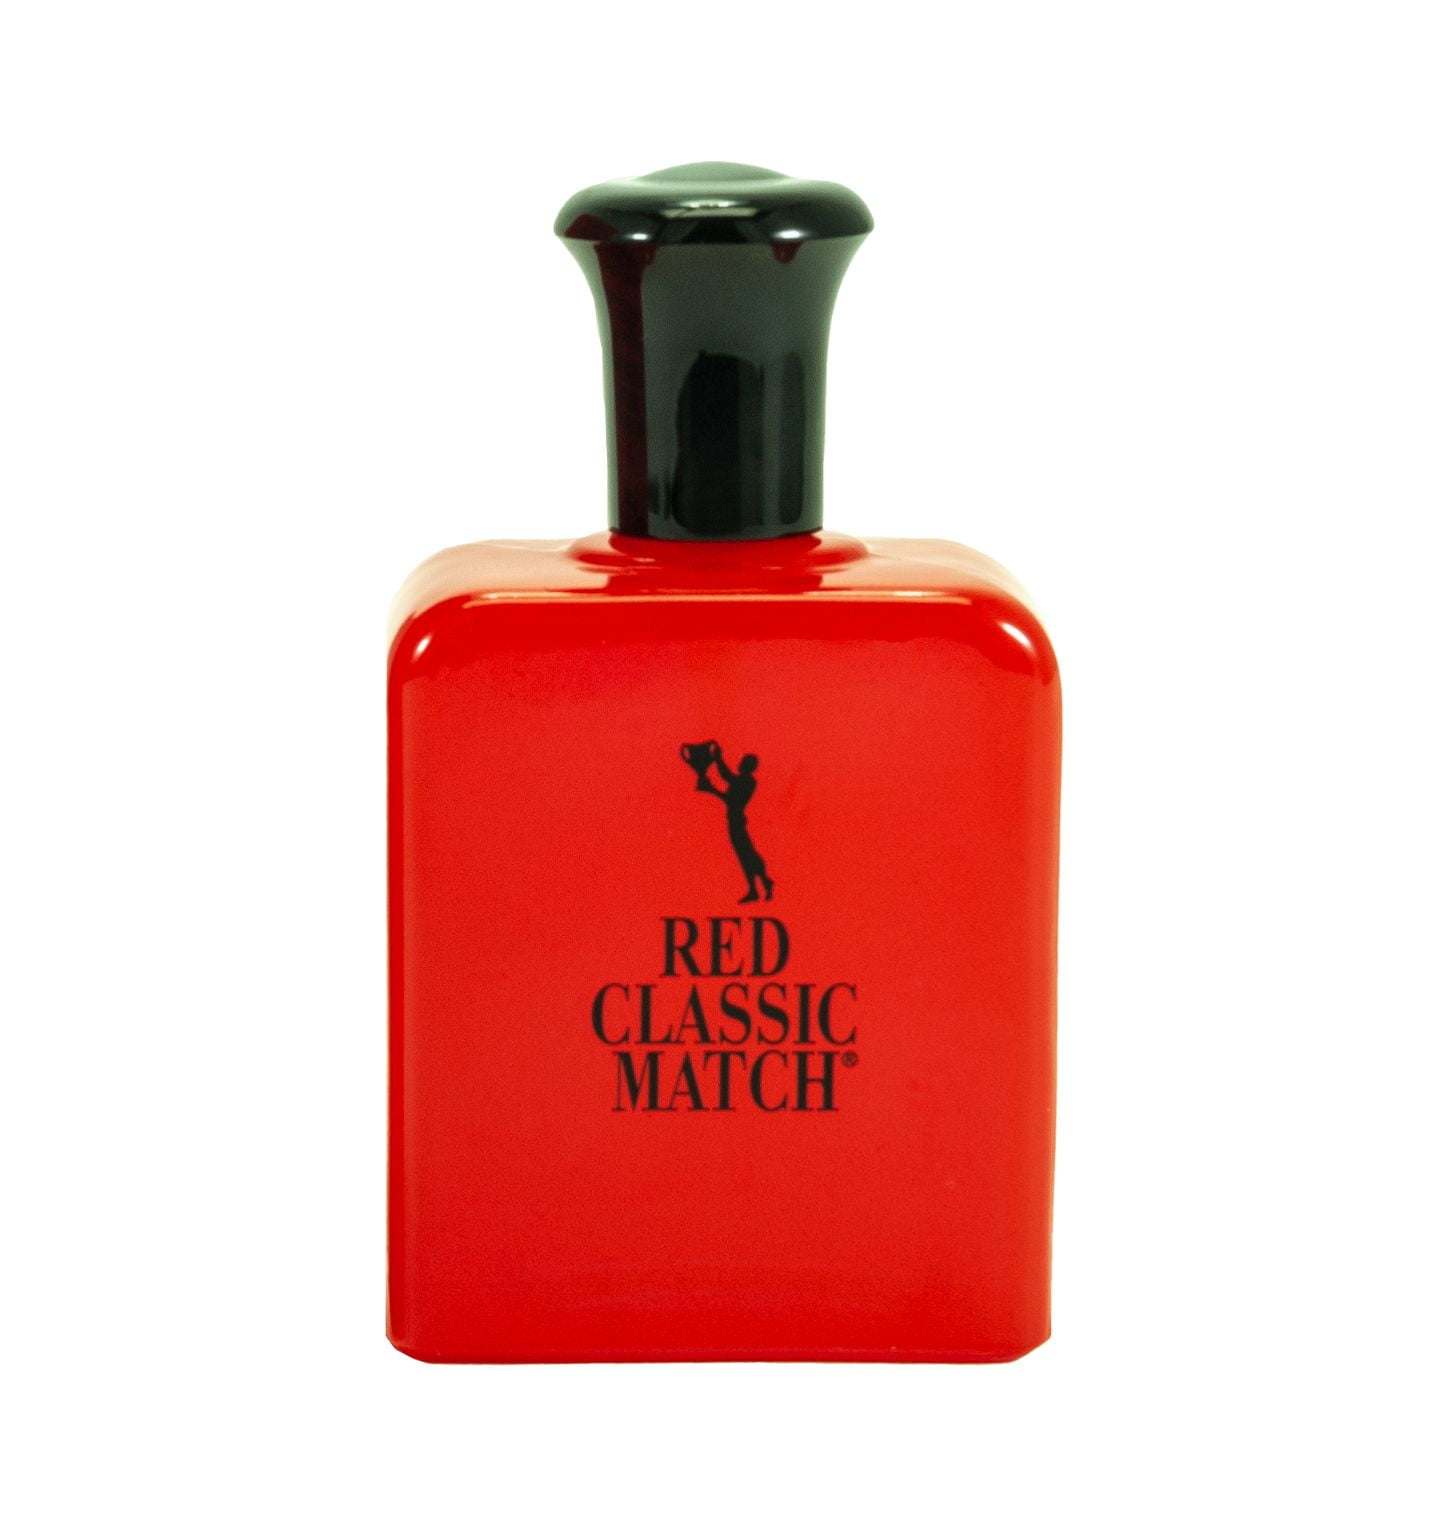 Nitro Men Eau de Toilette Spray Perfume, 3.4 fl oz